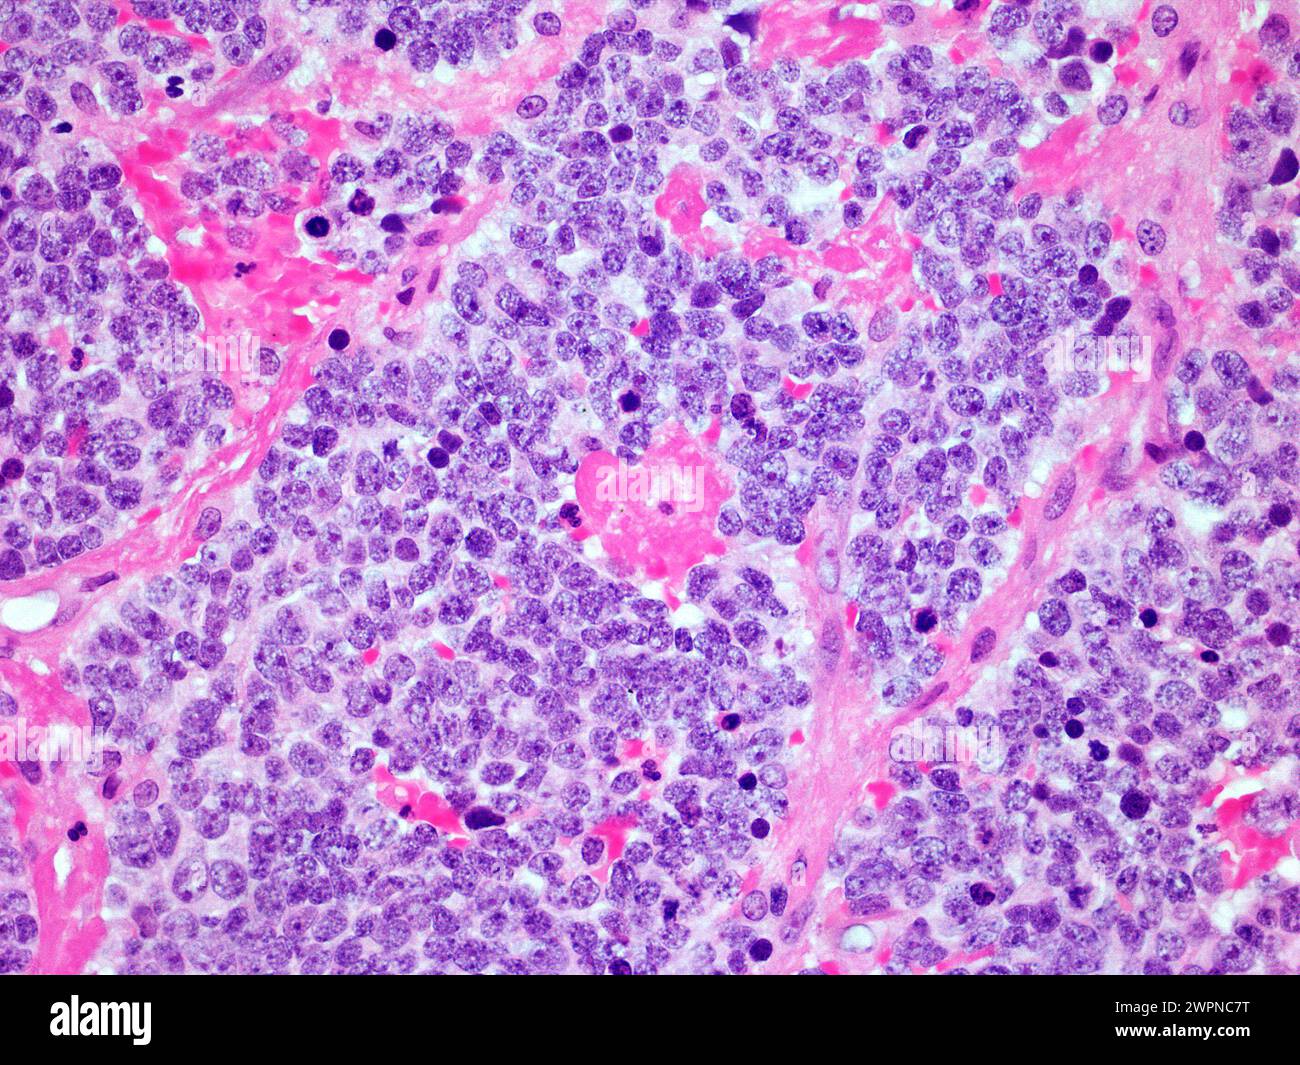 Mikroskopisches Bild eines malignen Neuroblastoms der Nebenniere bei 300-facher Vergrößerung mit Hämatoxylin- und Eosin-Färbung Stockfoto